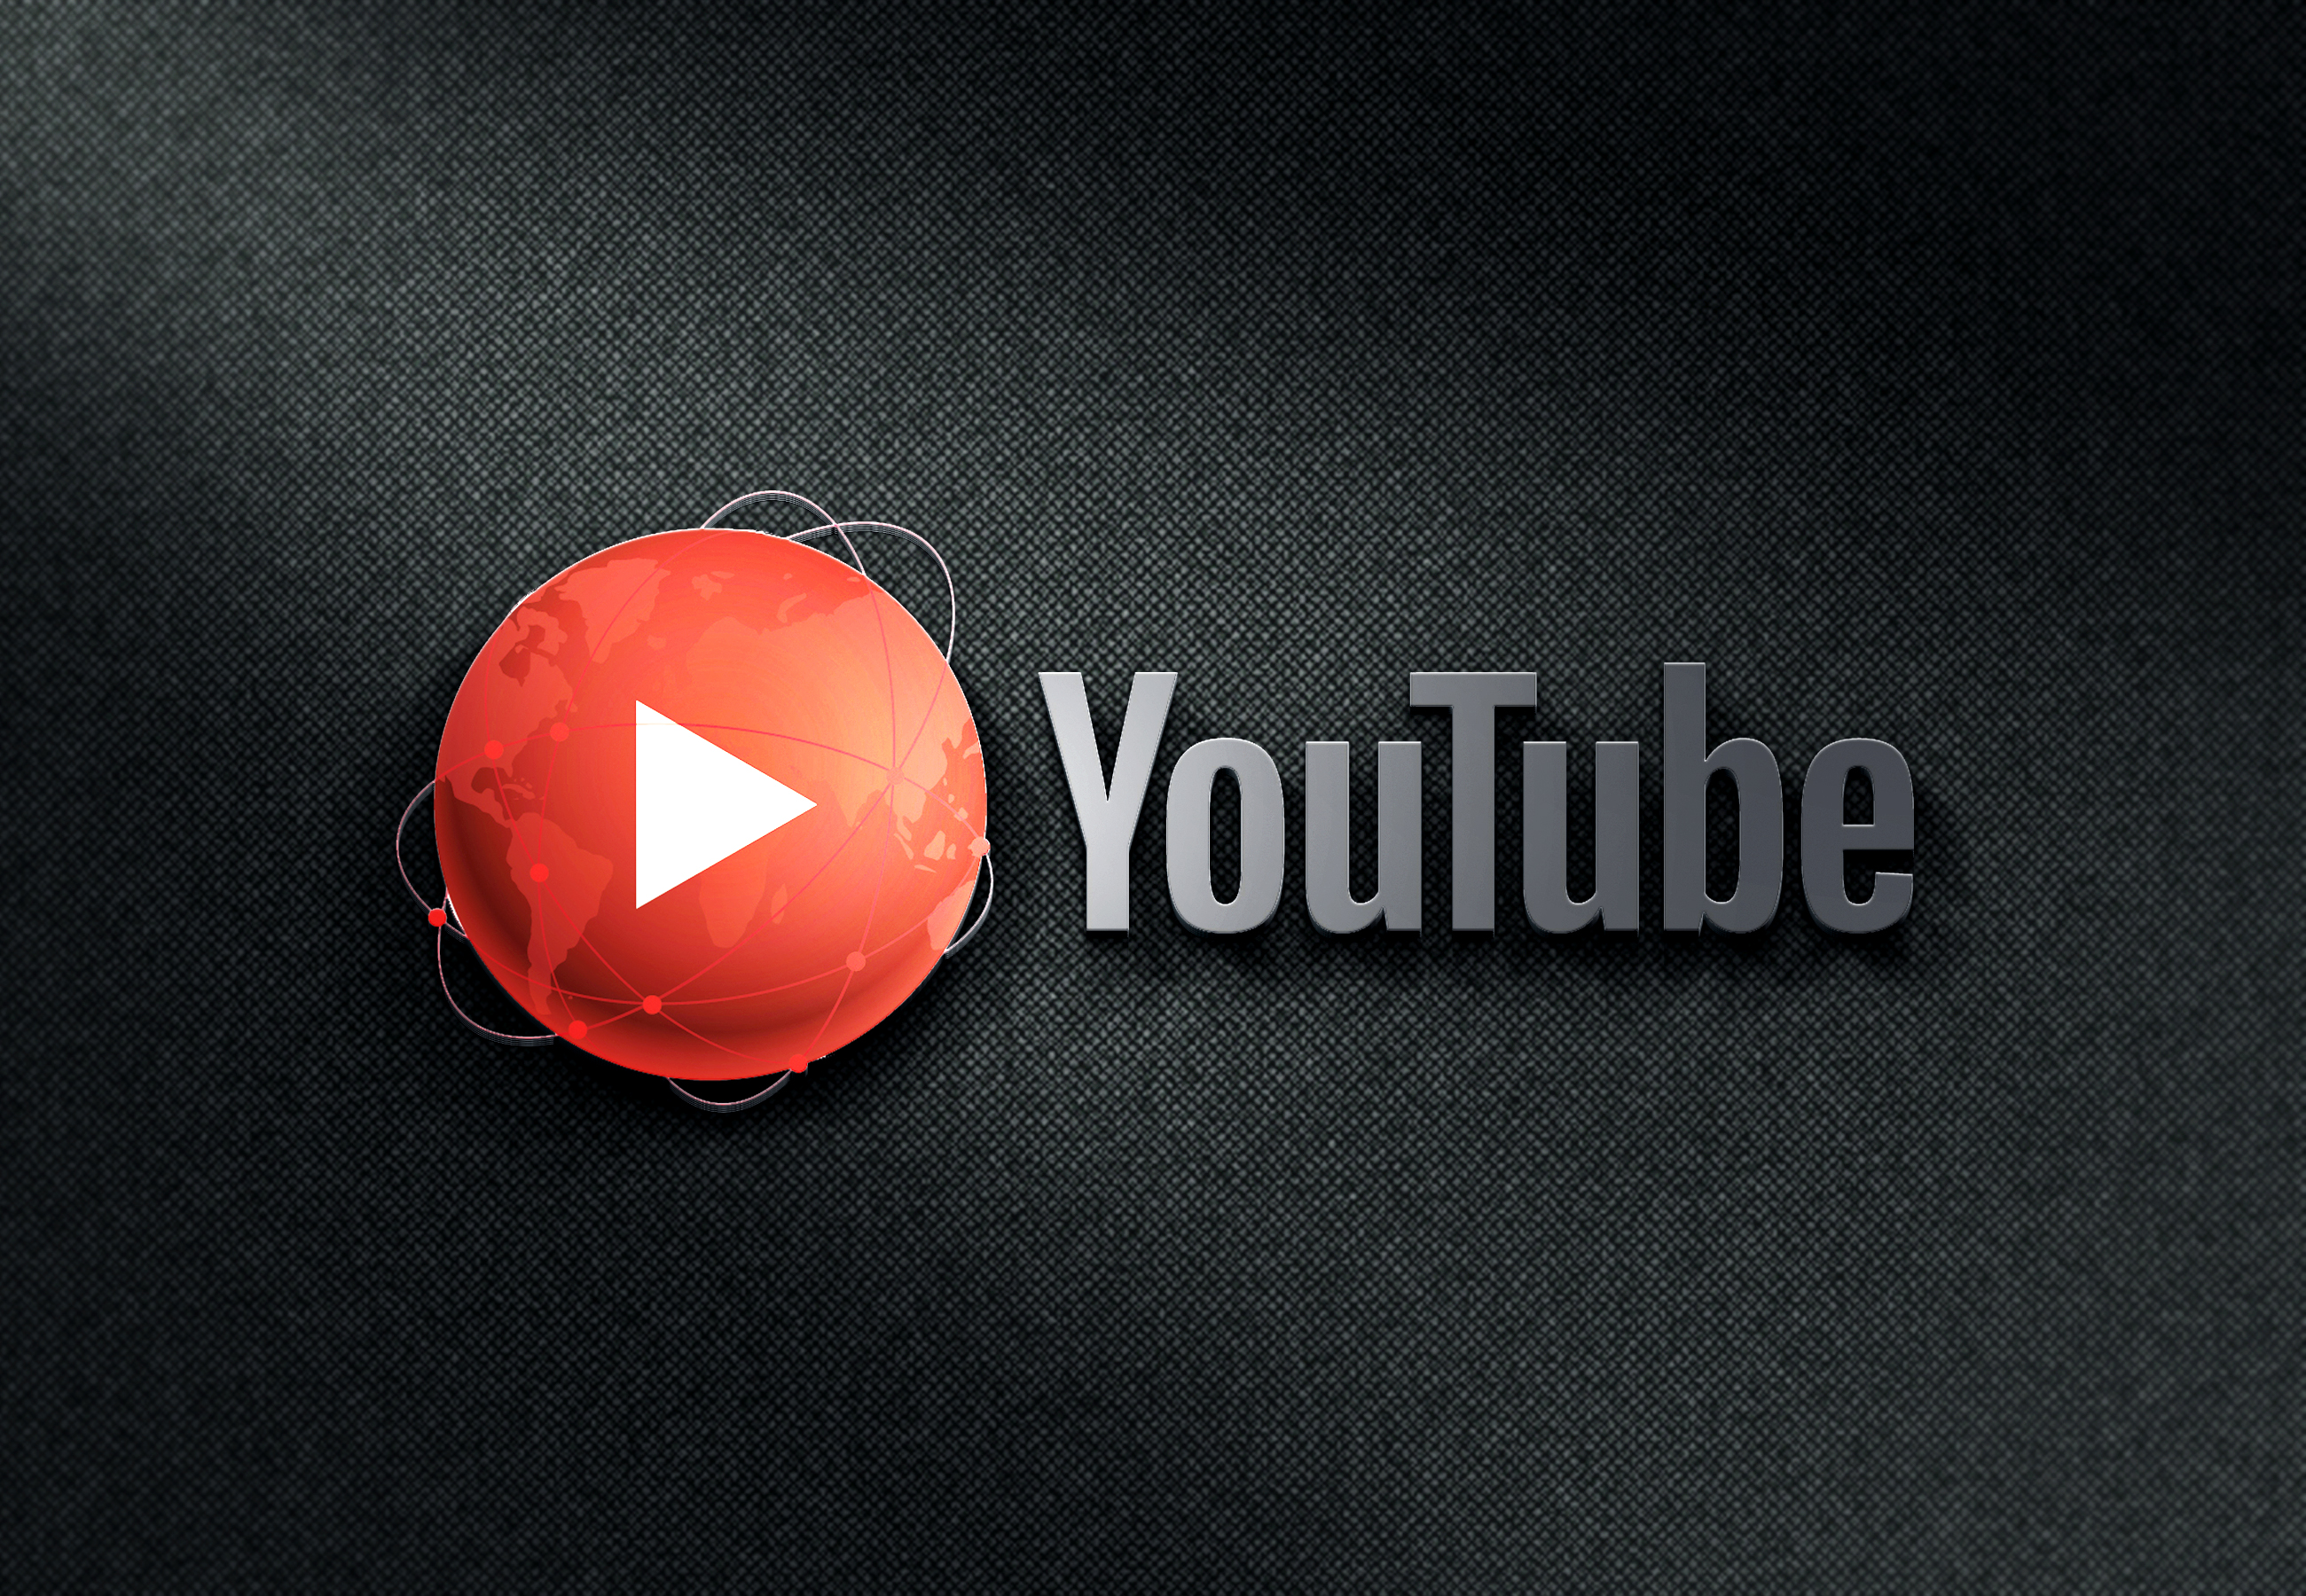 يوتيوب سيسمح بمشاهدة فيديوهاته الأصلية مجانا بدءا من الشهر المقبل